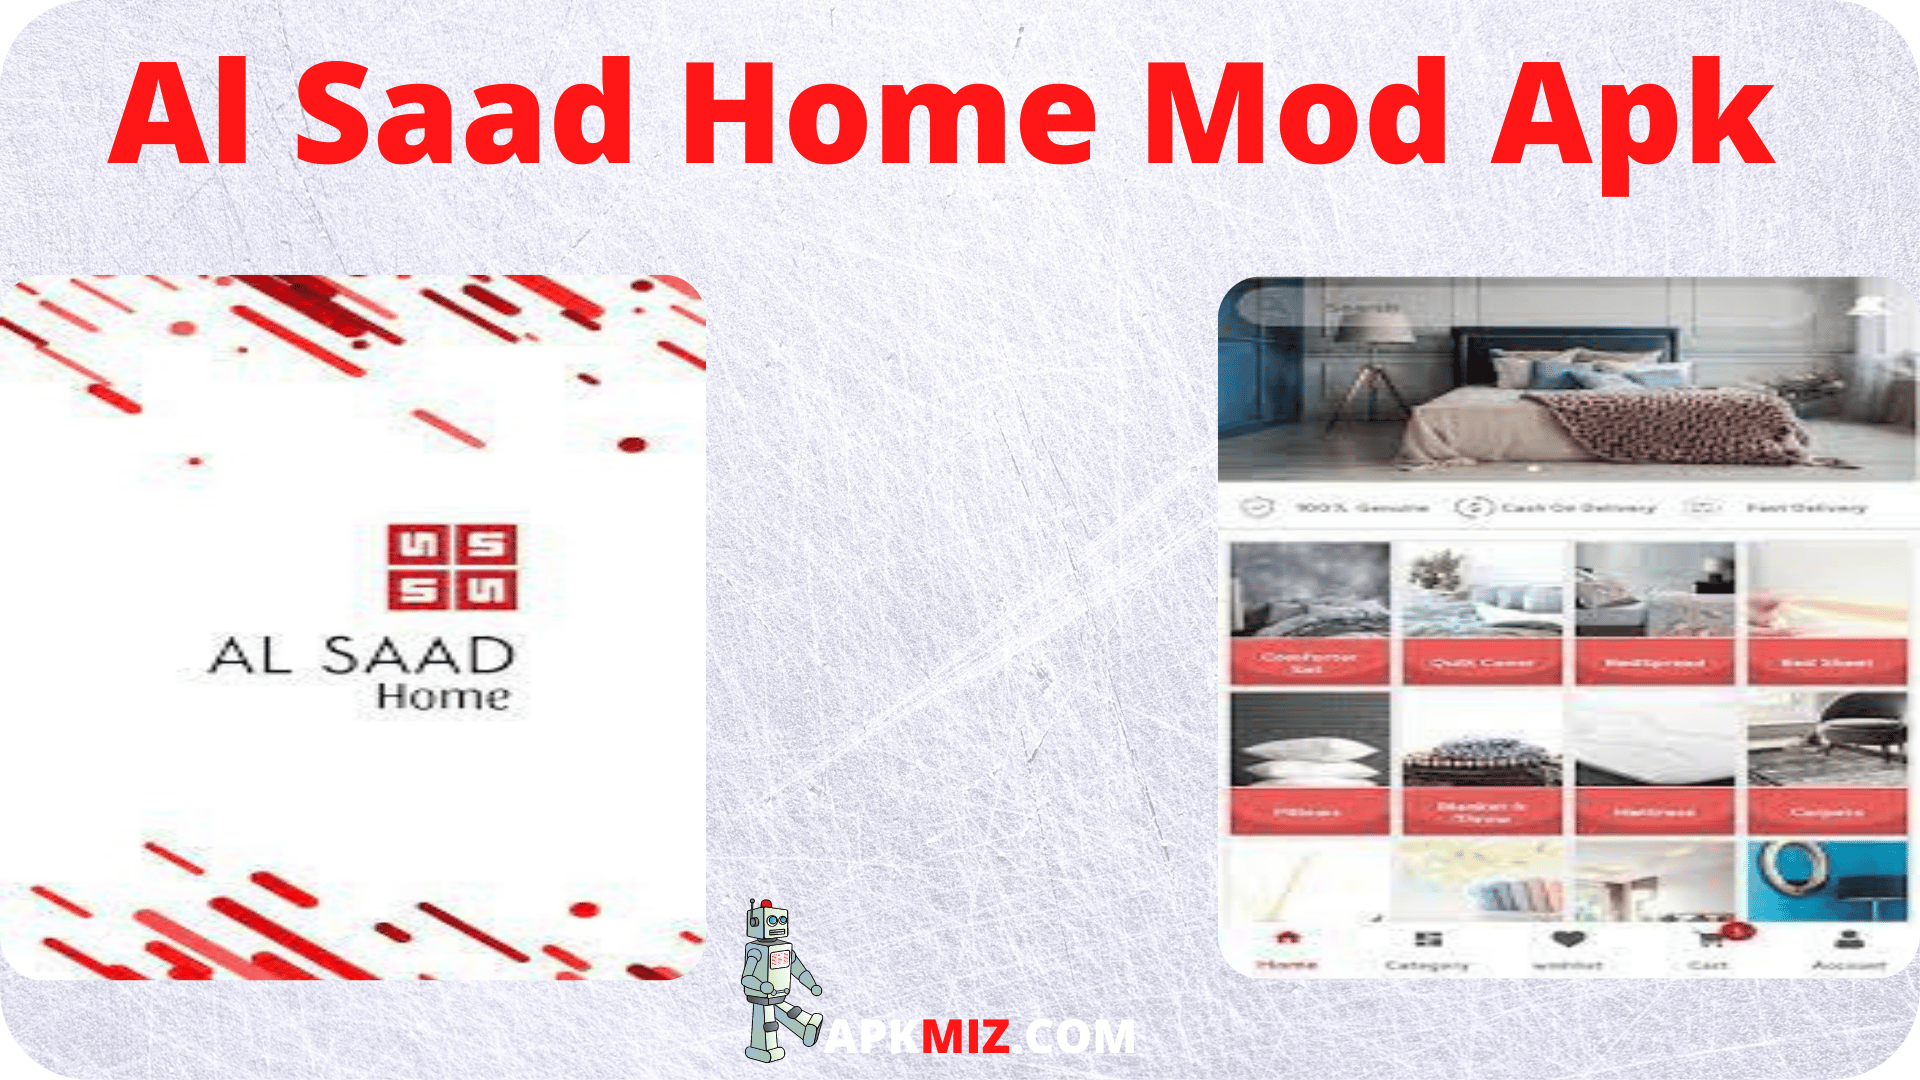 Al Saad Home Mod Apk